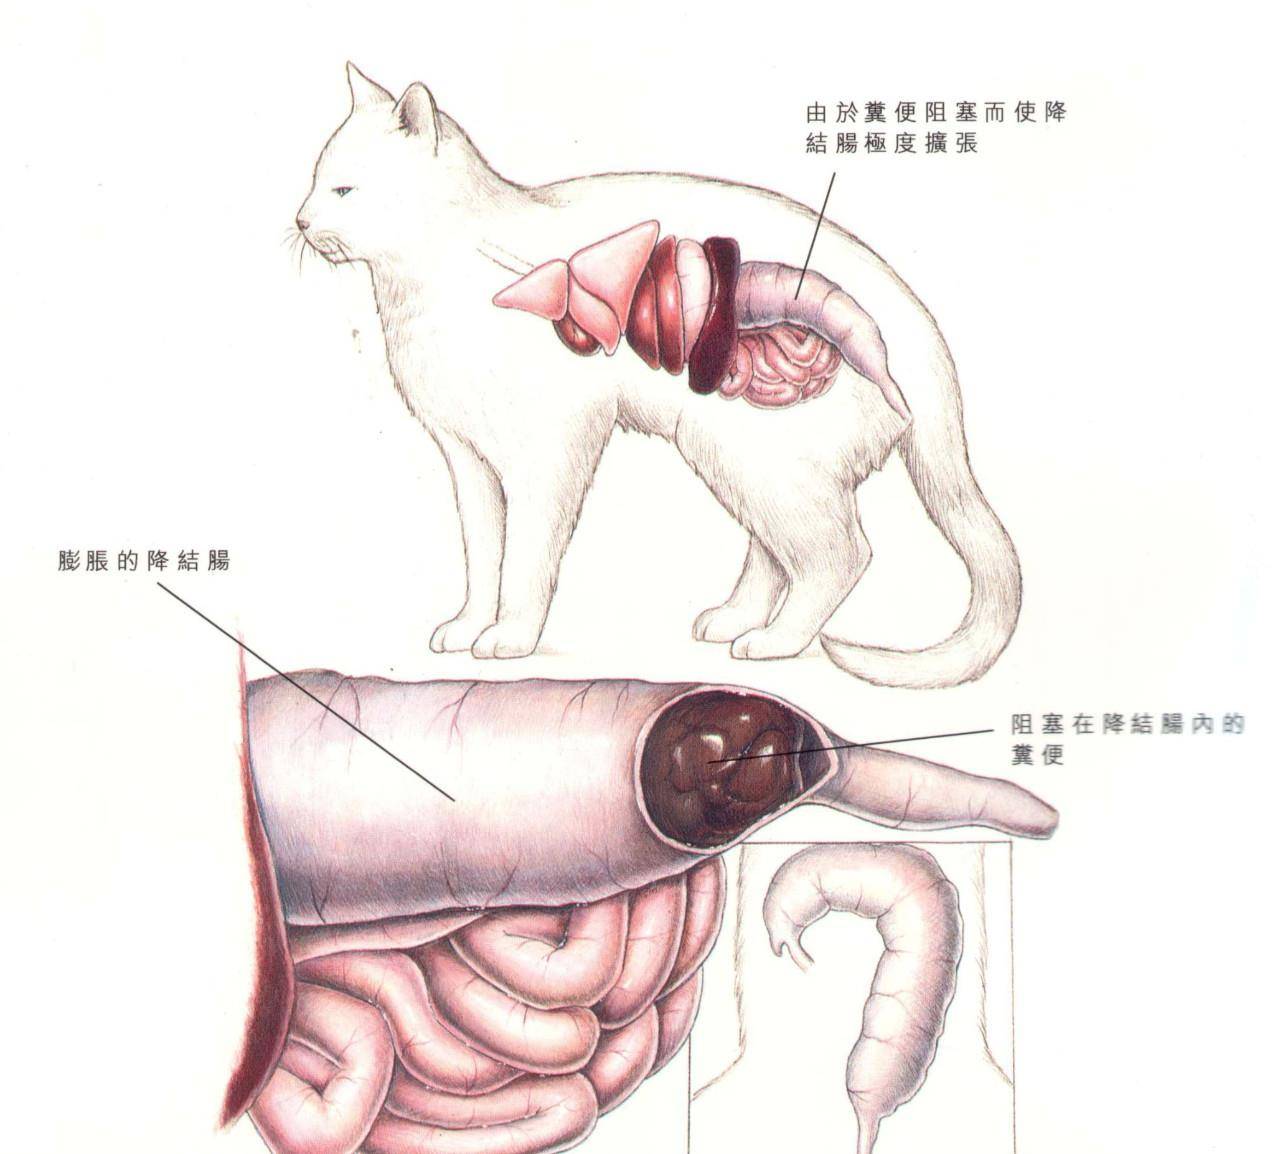 猫咪便秘不是小问题巨结肠症可以致命